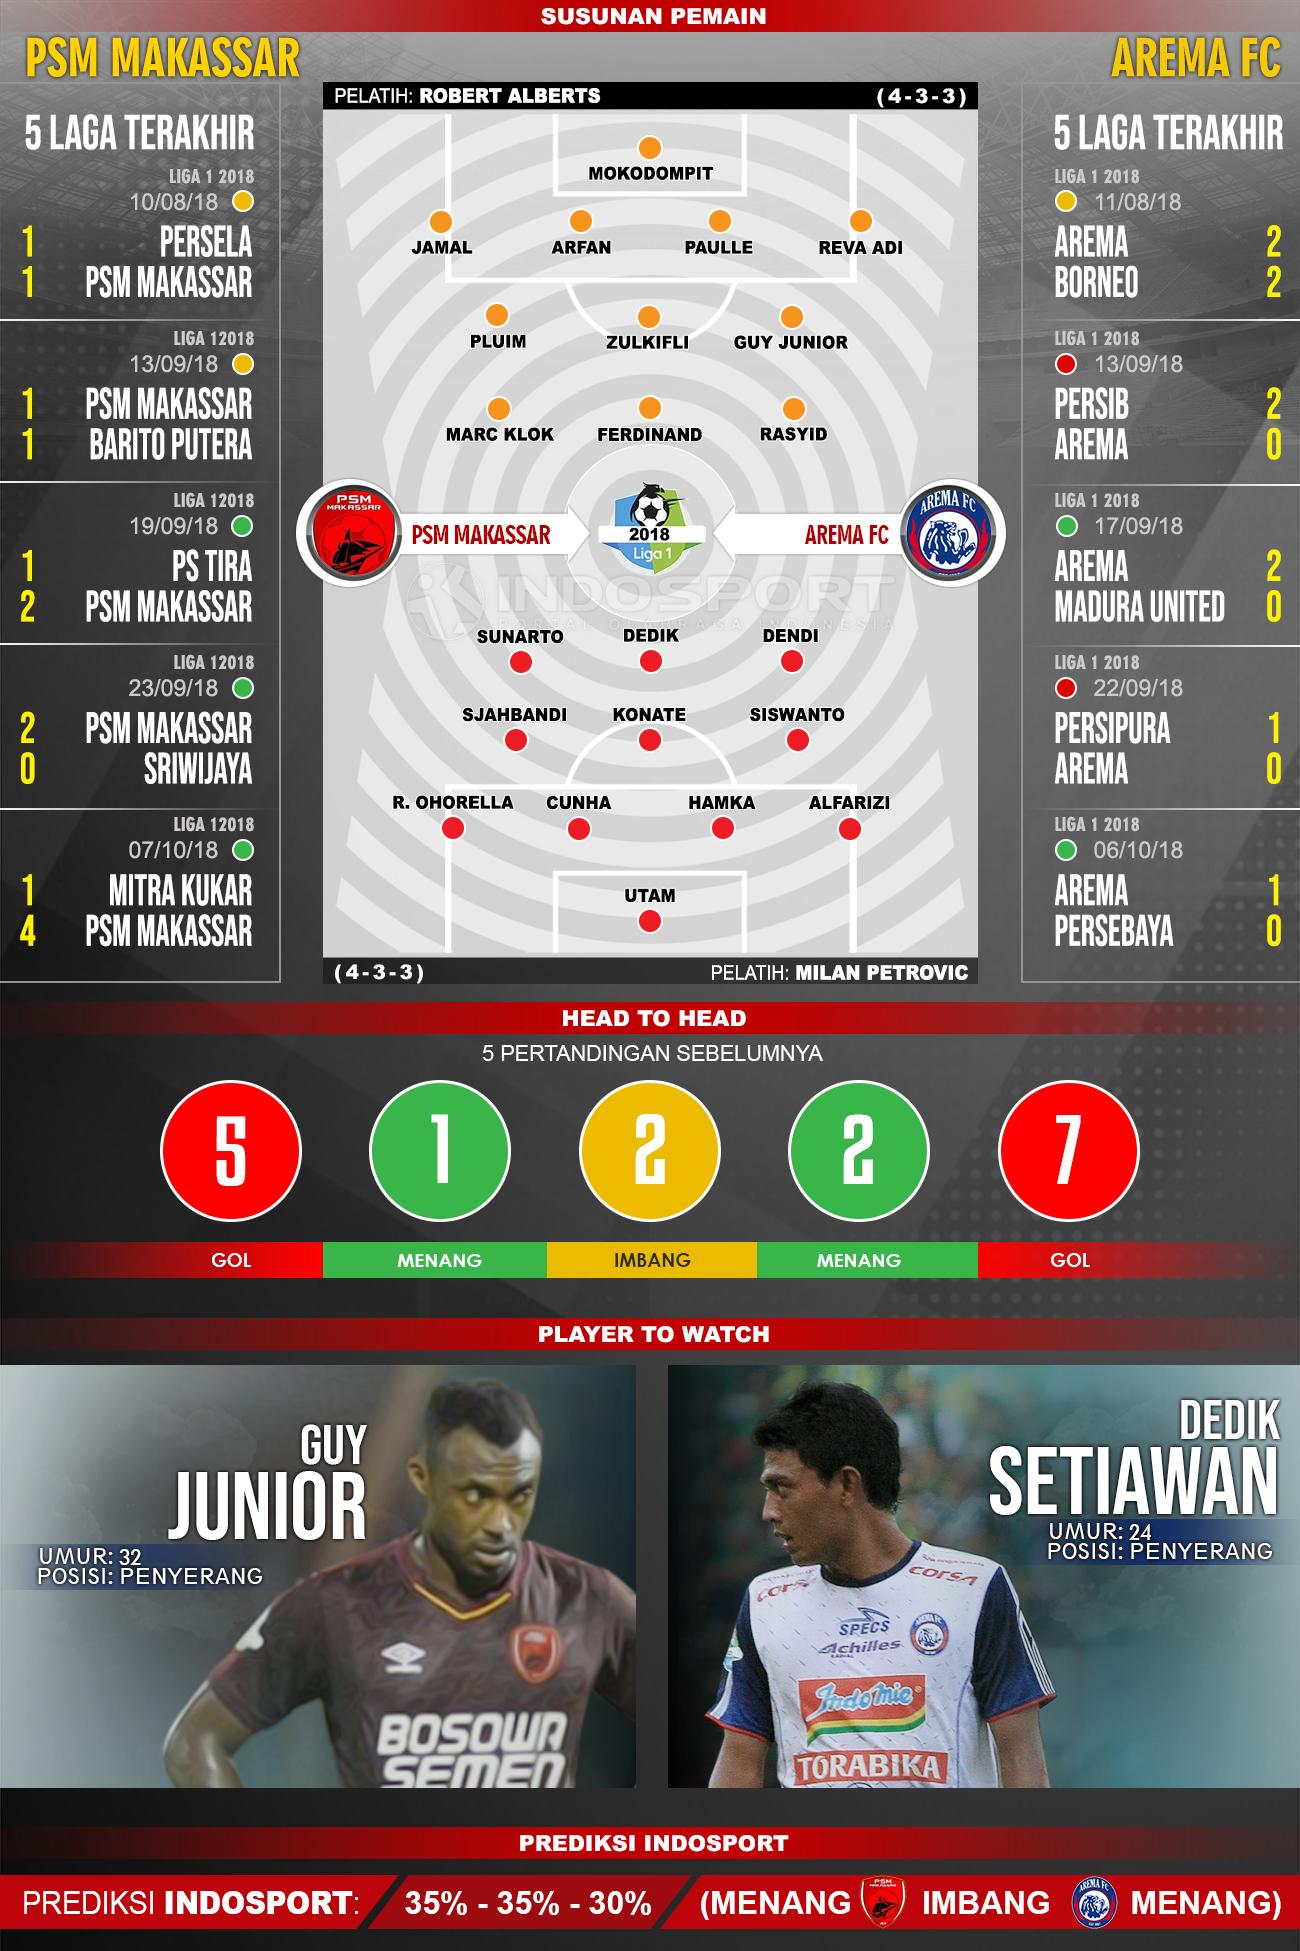 PSM Makassar vs Arema FC (Susunan Pemain - Lima Laga Terakhir - Player to Watch - Prediksi Indosport) Copyright: INDOSPORT